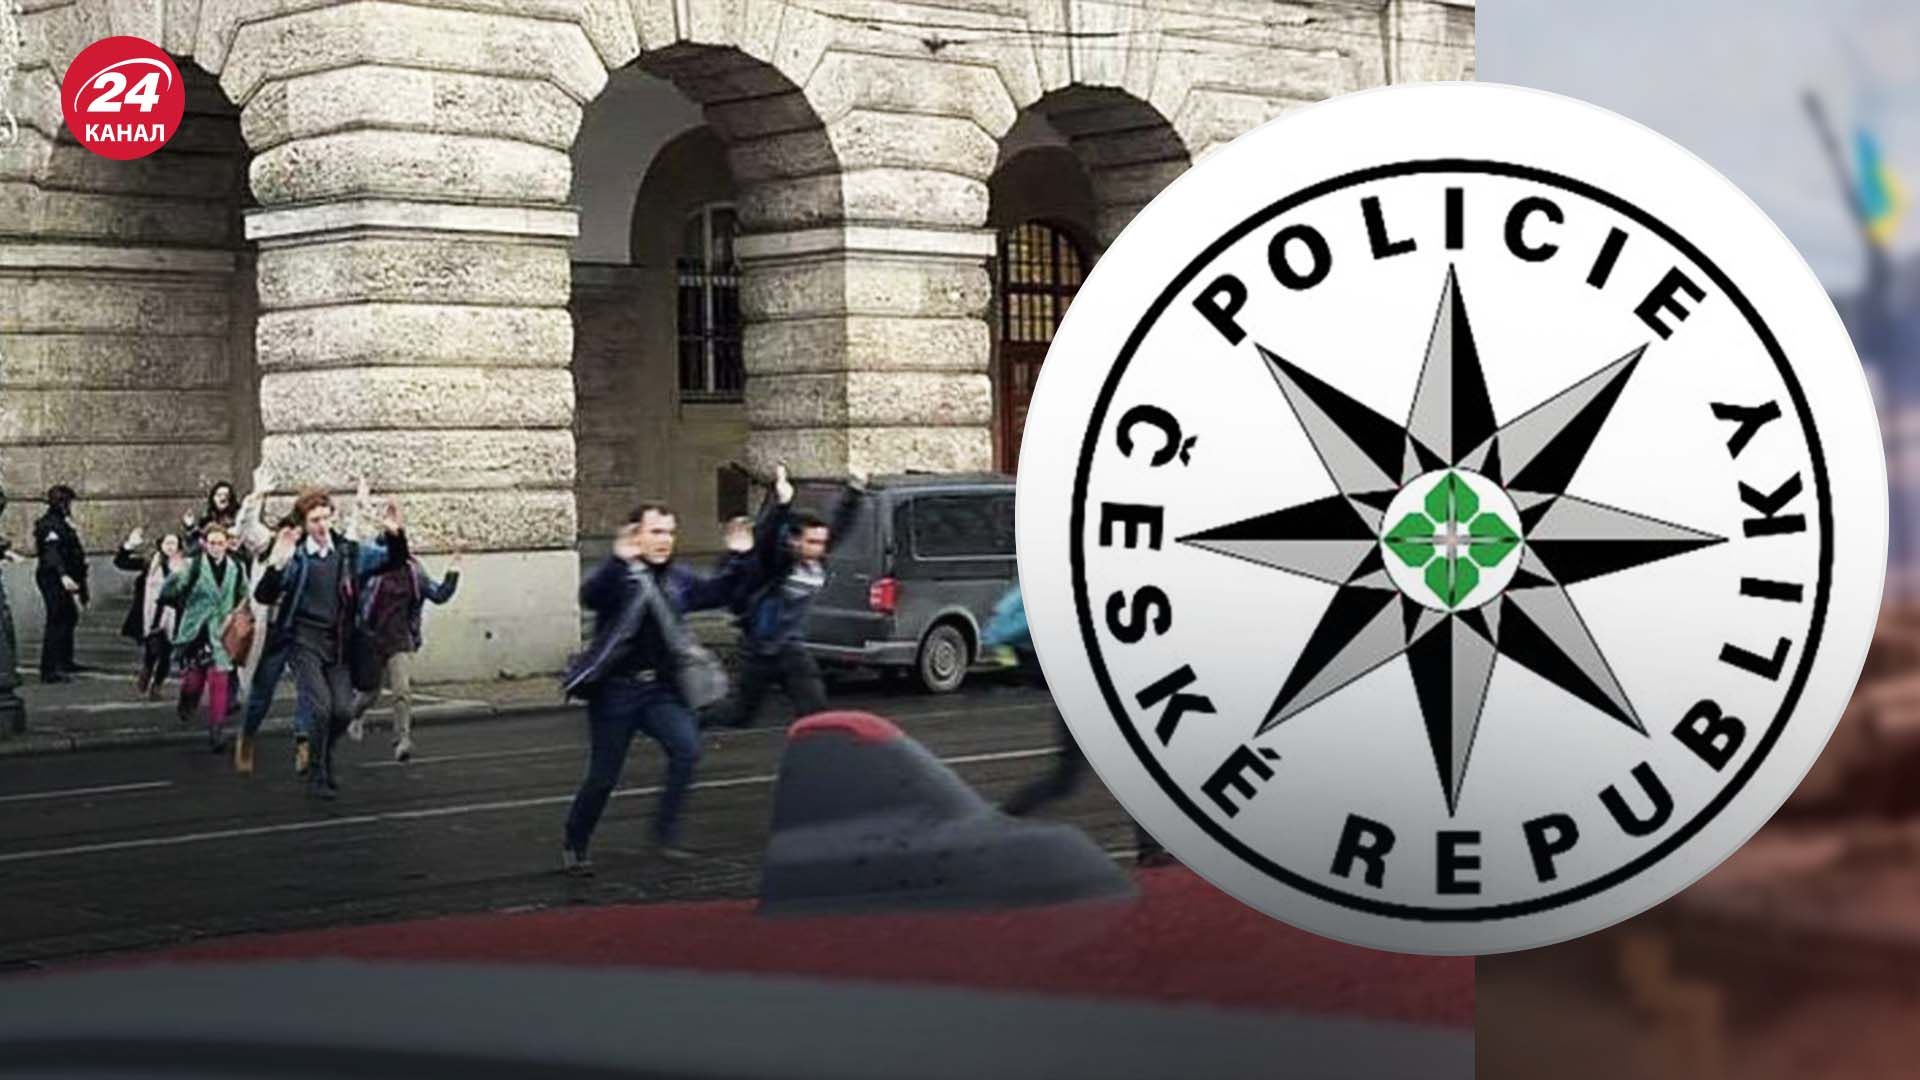 Полиция Чехии сообщила о схожих угрозах после стрельбы в Карловом университете в Праге